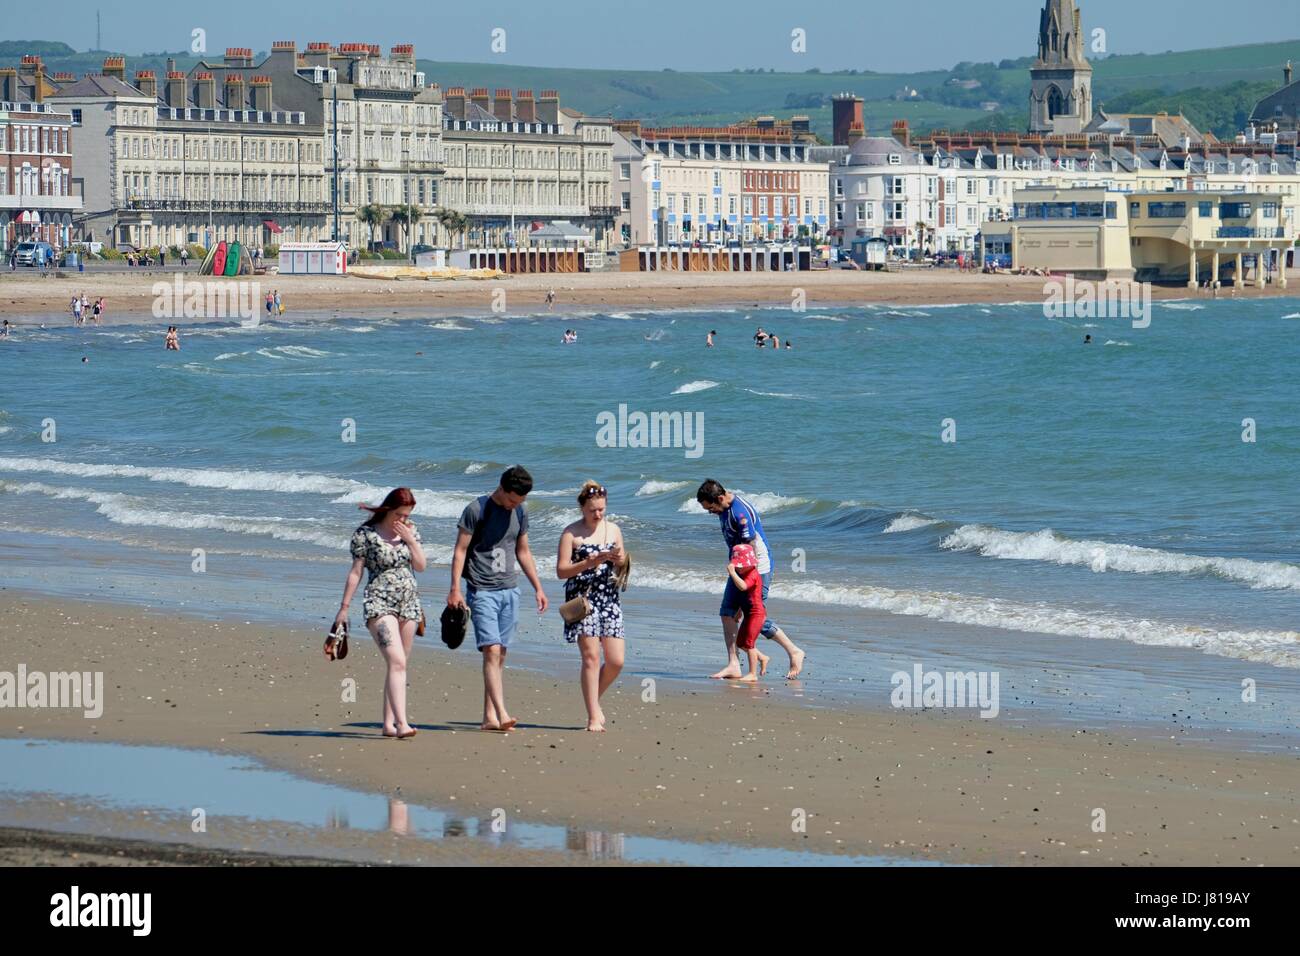 Weymouth, Dorset, UK. 26 mai, 2017. Les amateurs de plage Profitez d'une balade sous un ciel bleu clair à l'extrémité la plus calme de la plage de Weymouth comme les températures continuent de grimper. Crédit : Tom Jura/Alamy Live News Banque D'Images